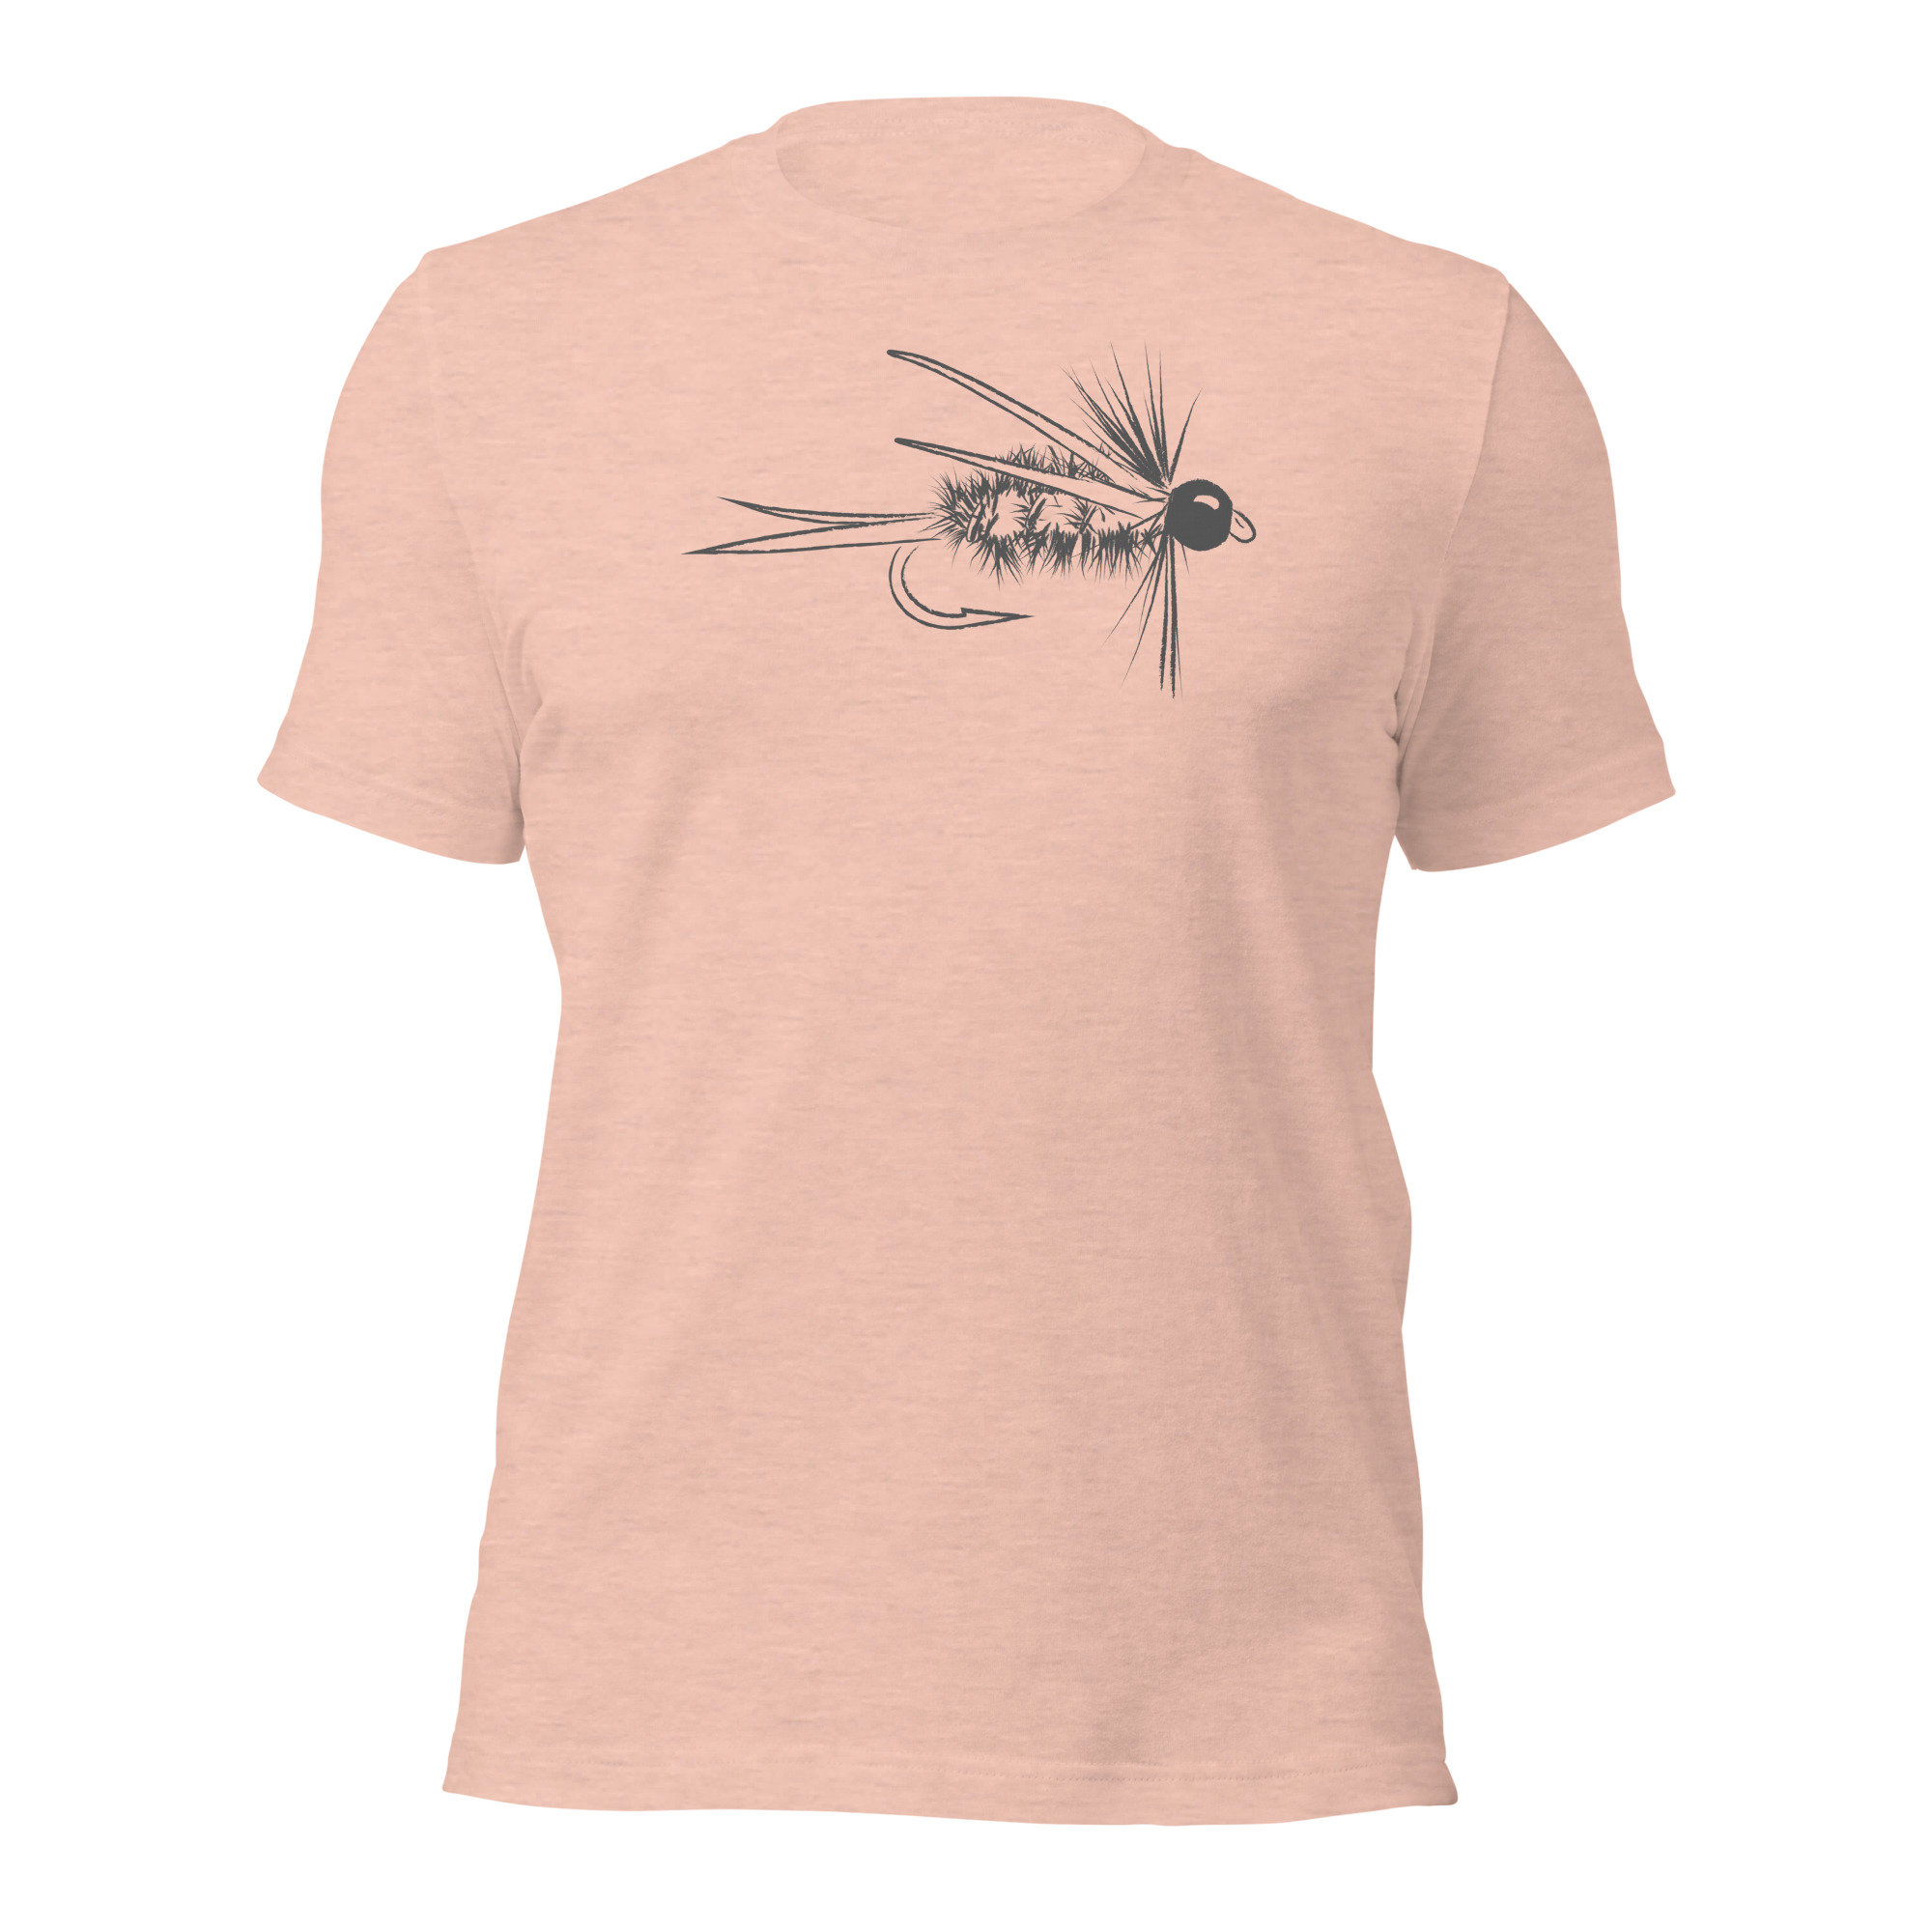 Prince Nymph T Shirt, Prince Nymph Shirt, Fly Fishing Shirt, Nymph Fishing,  Fly Fishing, Fishing Shirt, Fishing T Shirt, Mens Shirt -  Canada